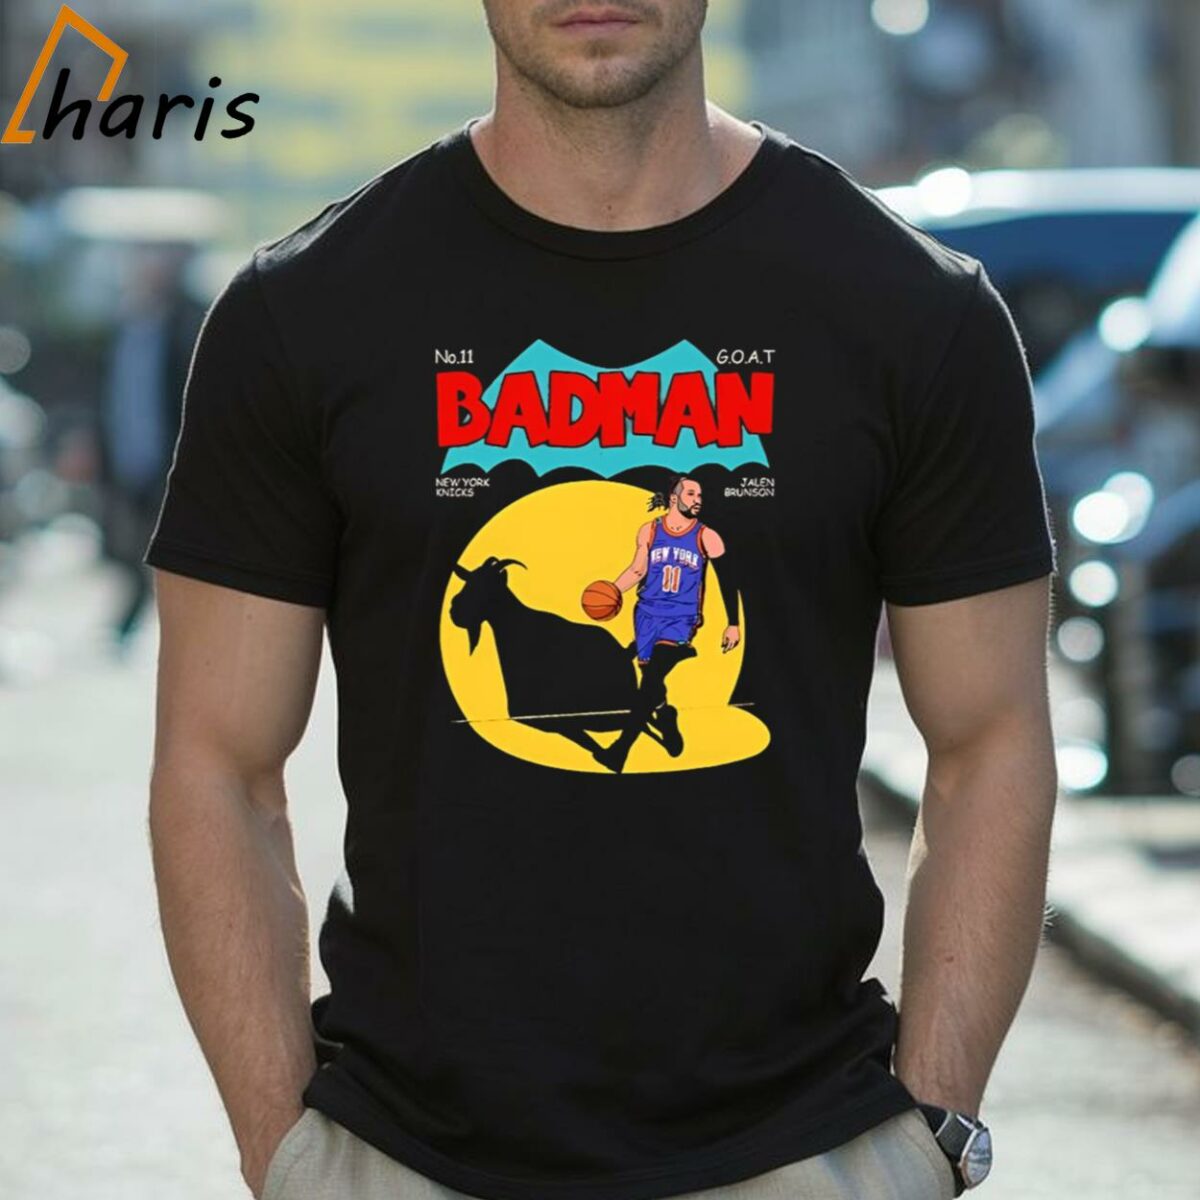 Jalen Brunson New York Knicks Badman No 11 Goat Shirt 2 Shirt